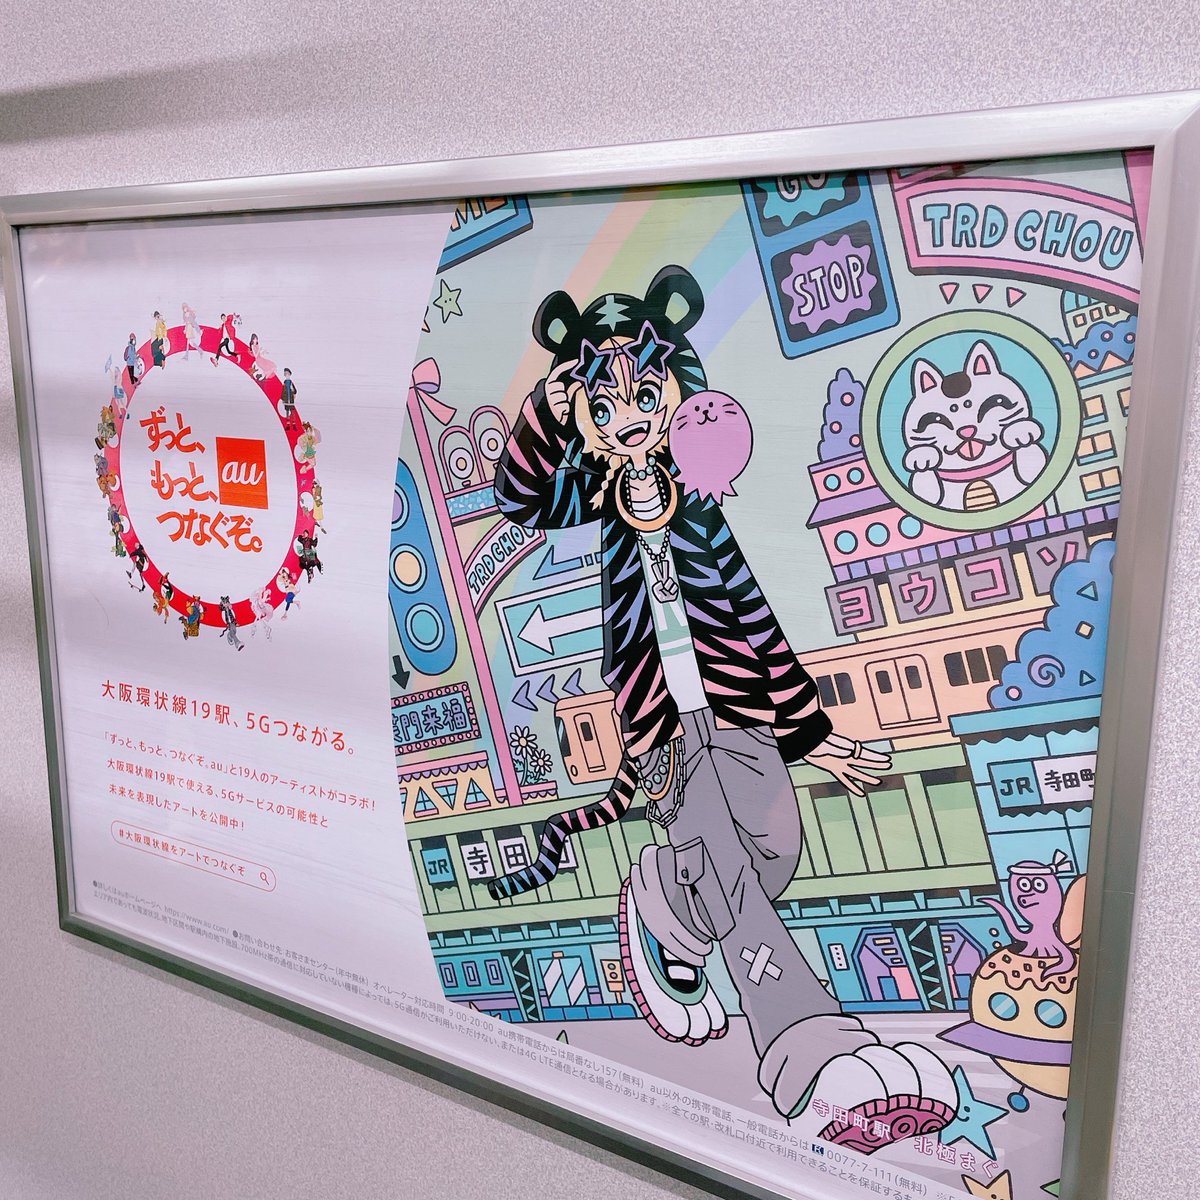 見てきたー!大阪駅のあちこちに私の絵が…!!思い切って見に来てよかった…
#大阪環状線をアートでつなぐぞ 